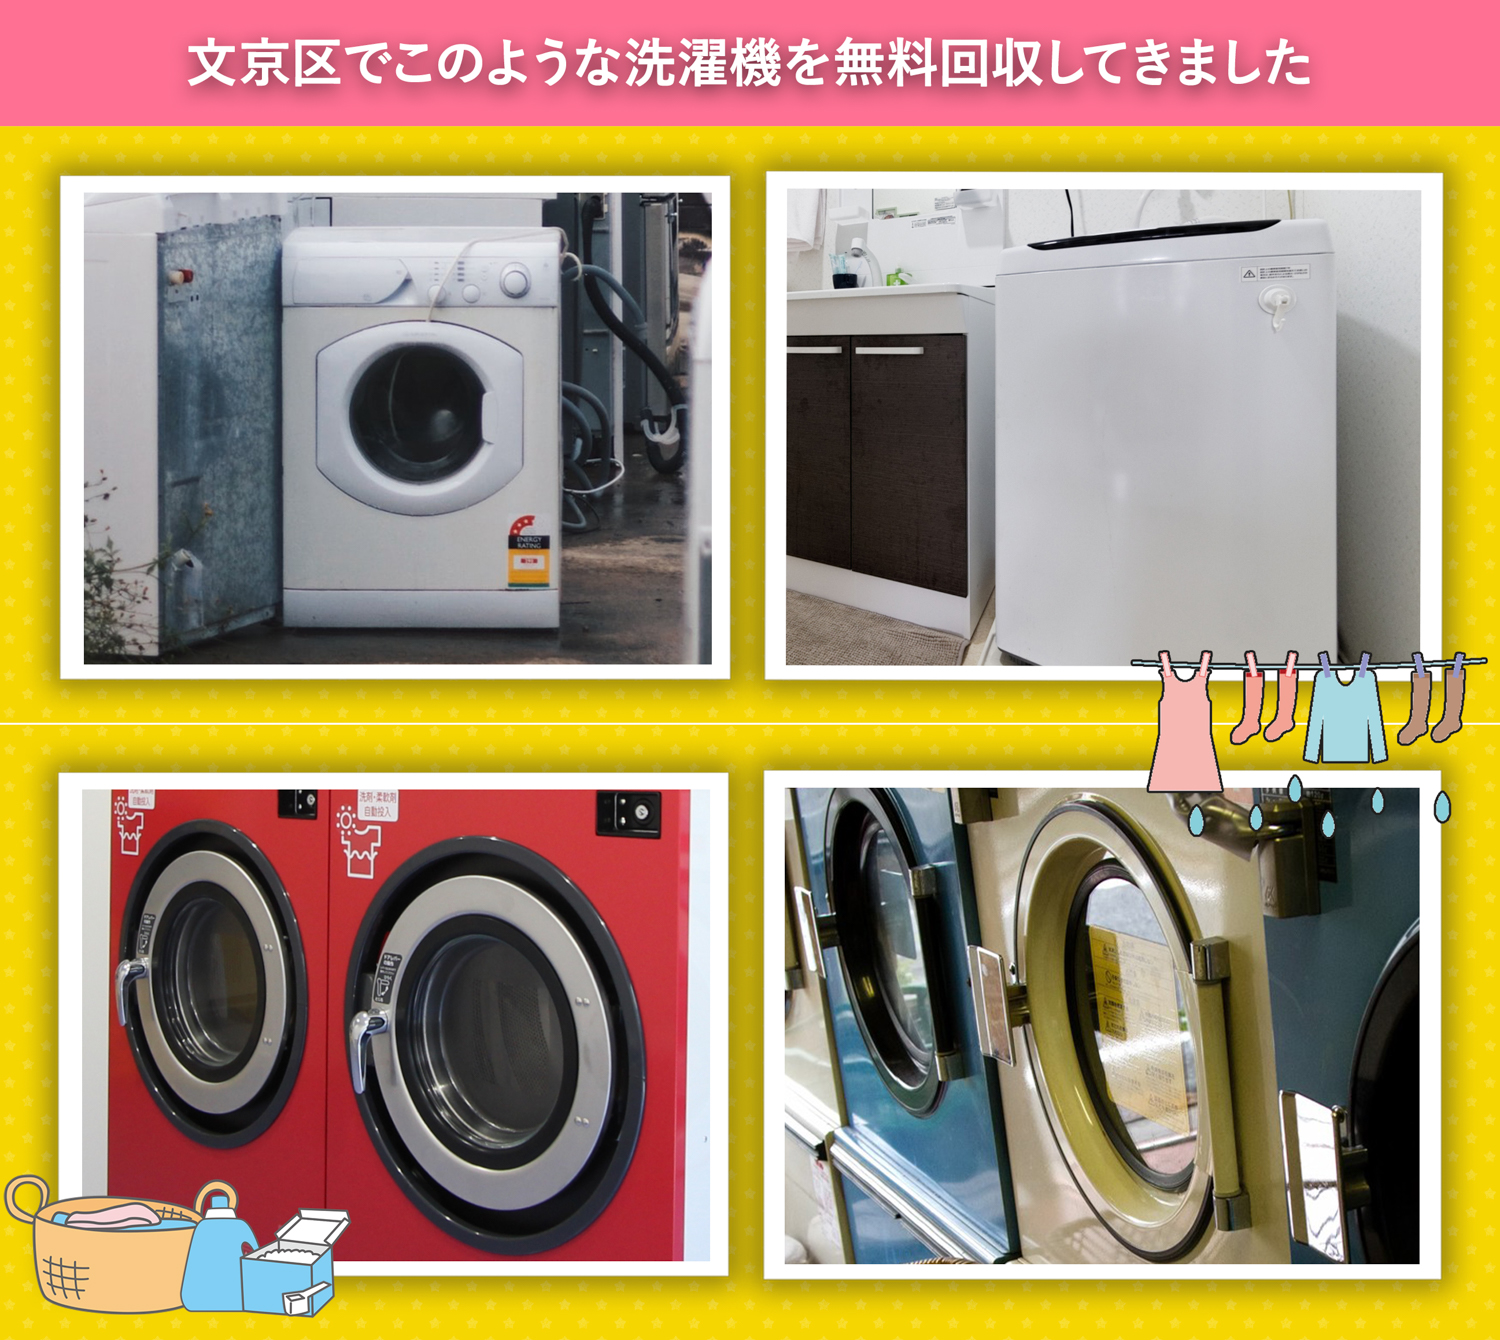 文京区でこのような洗濯機を無料回収してきました。